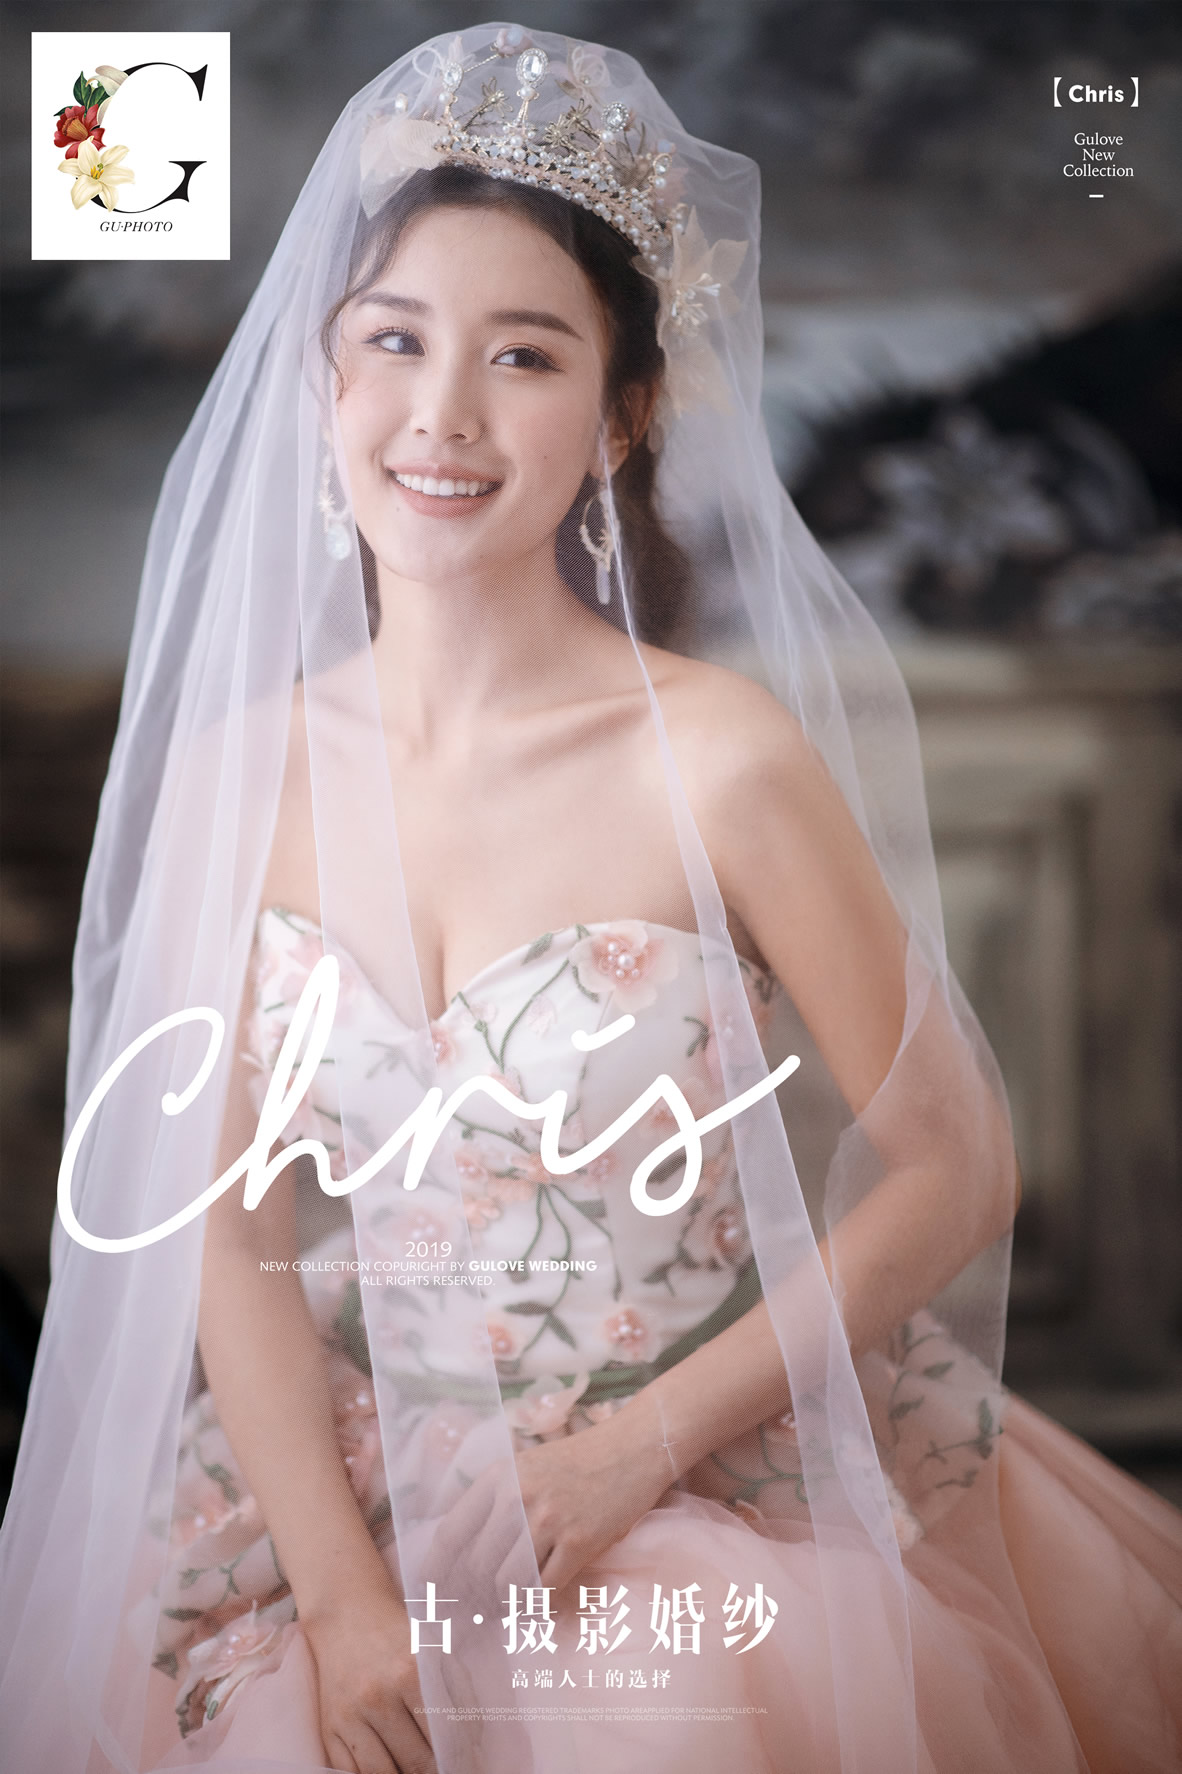 全新《CHIRIS》系列 - 明星范 - 古摄影婚纱艺术-古摄影成都婚纱摄影艺术摄影网